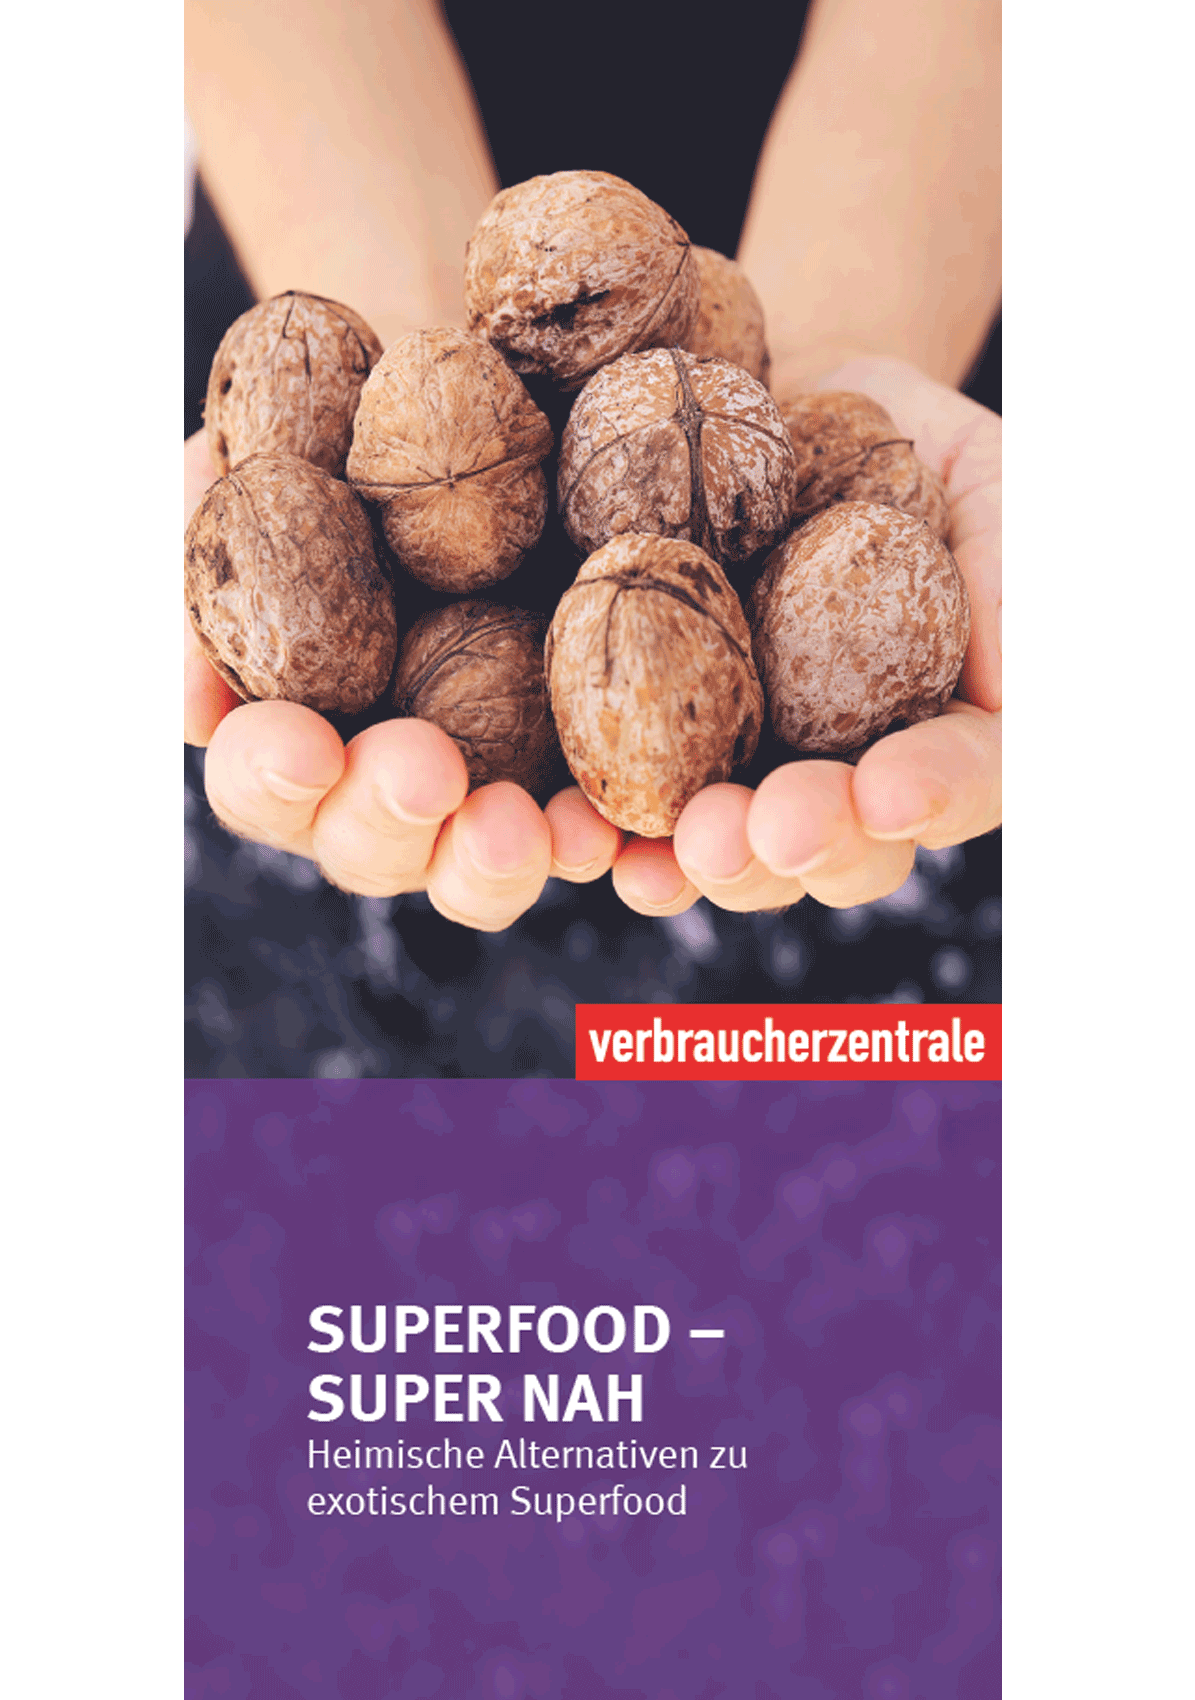 Titelbild des Flyers der Verbraucherzentrale zu Superfoods und Alternativen (2020)